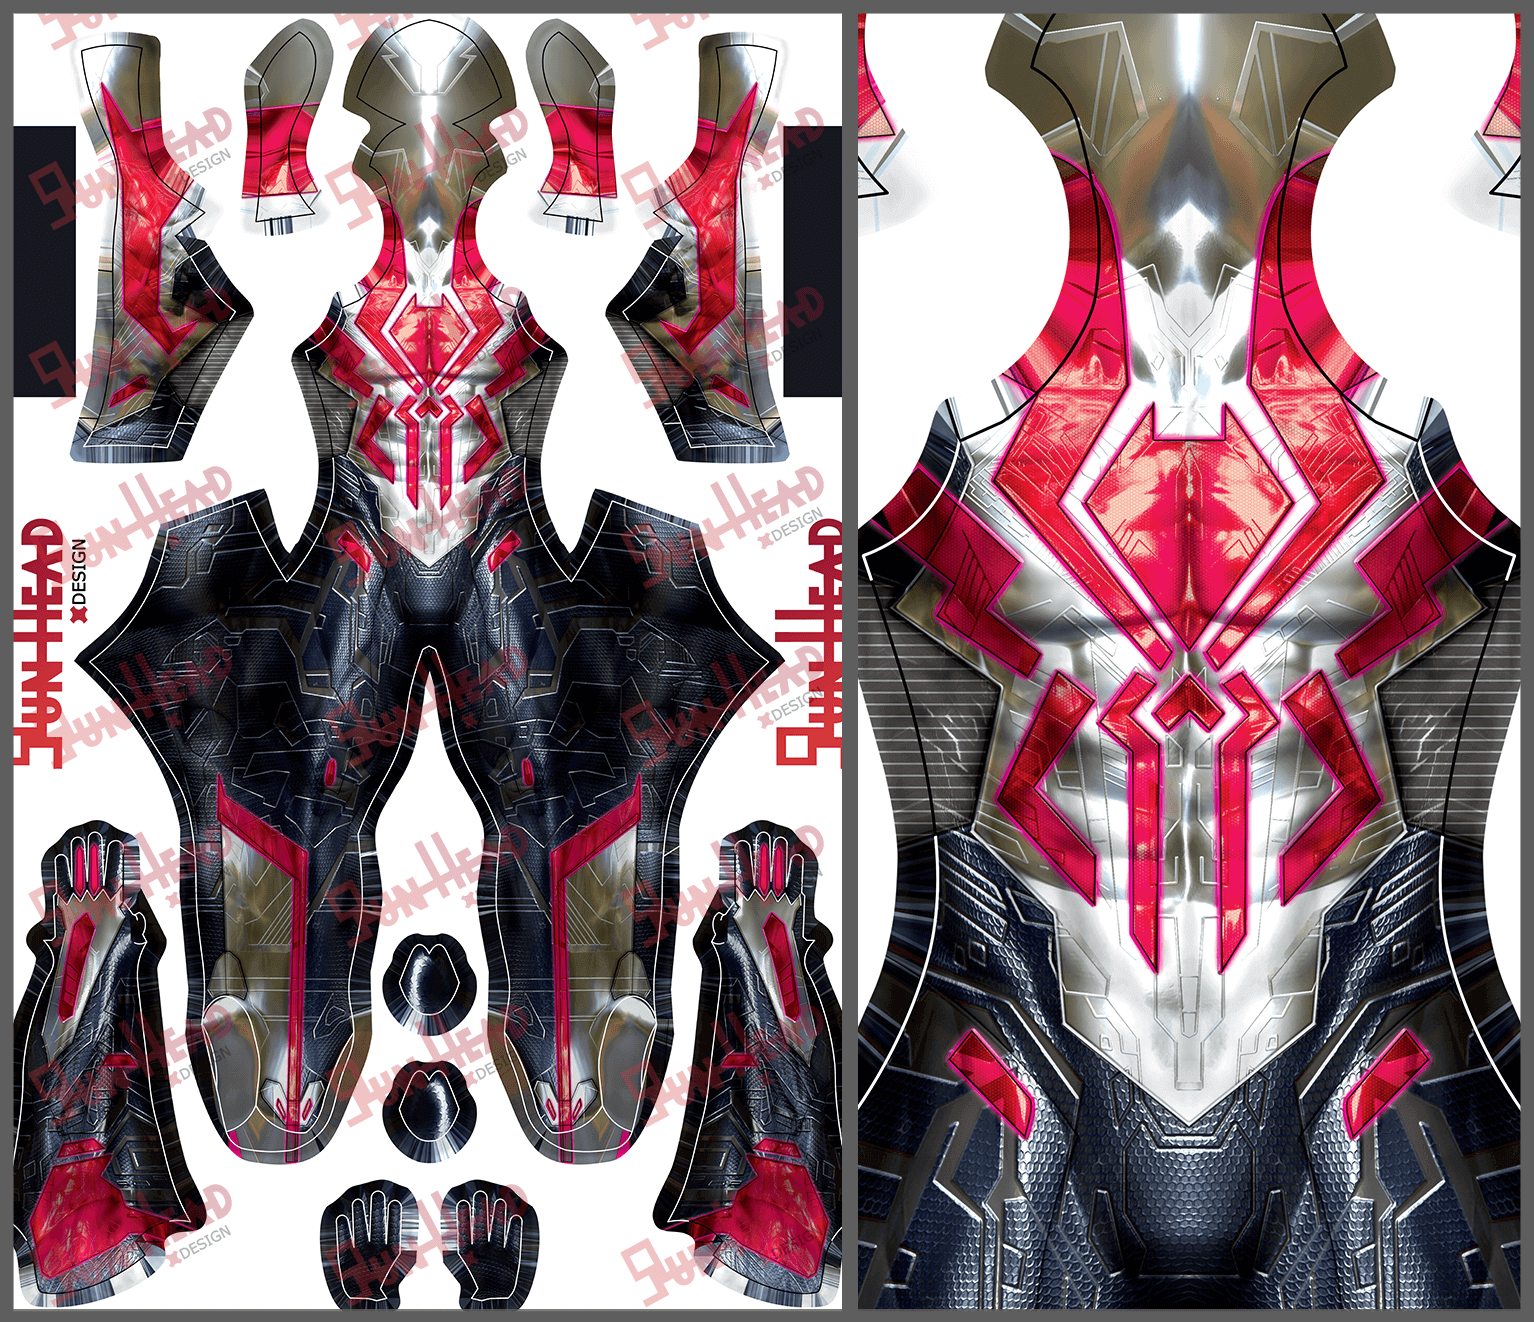 Gun Head Design Tempest Spandex Suit [20210157] - $65 : printcostume